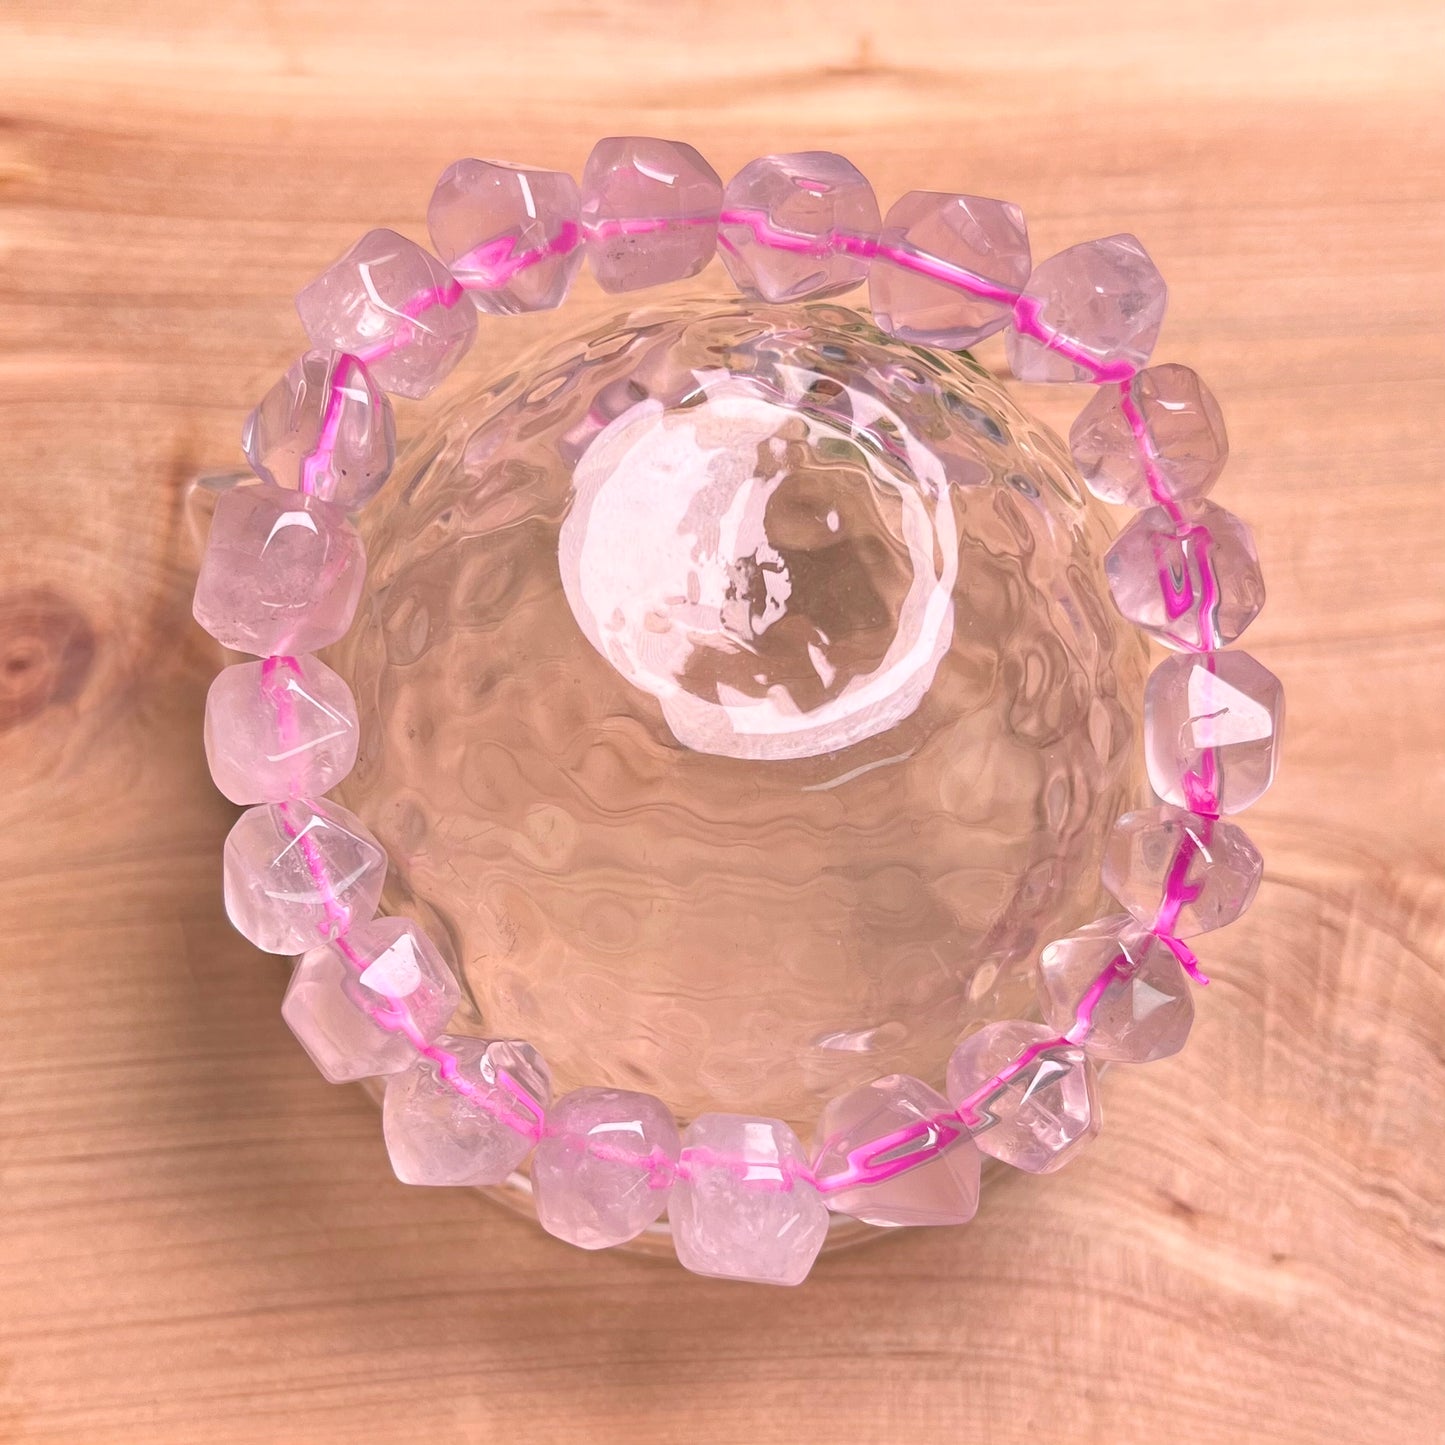 Starlight Rose Quartz Bracelet 7-11mm